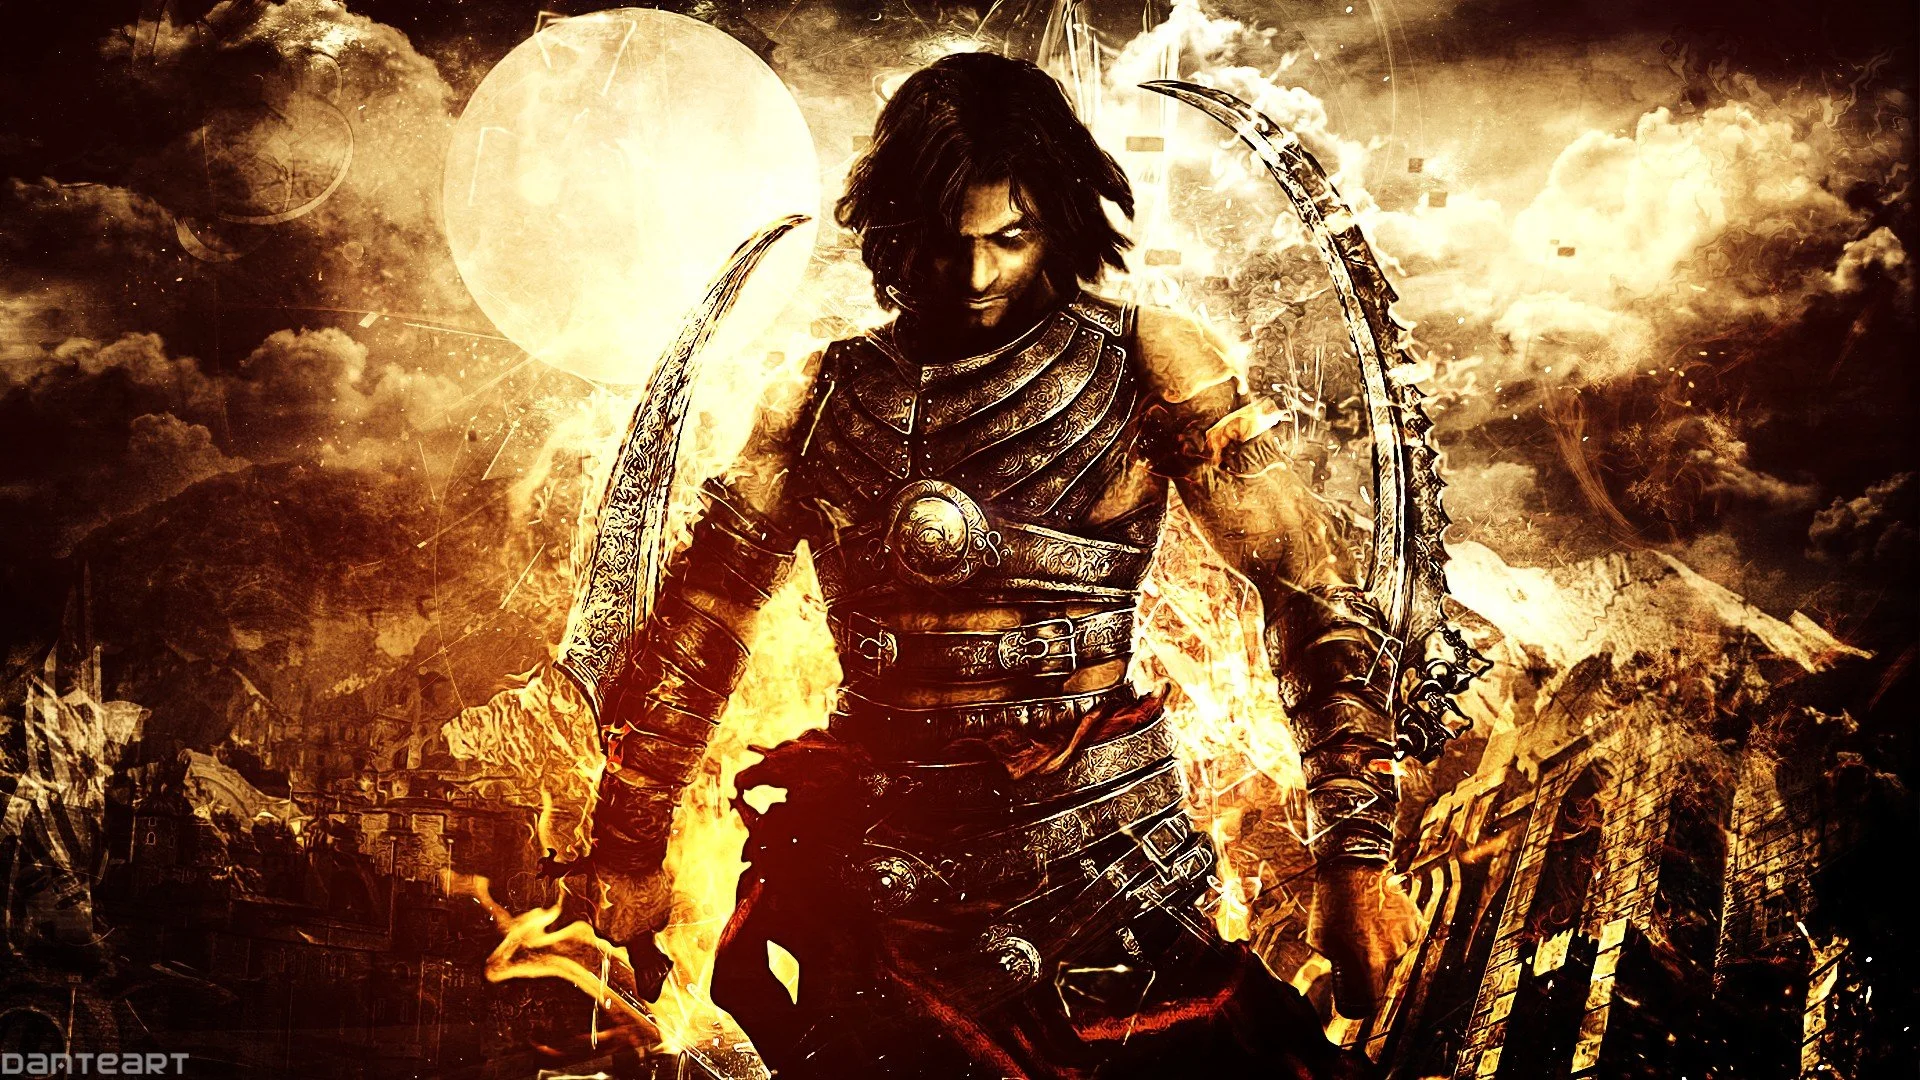 داستان بازی Prince of Persia: Warrior Within به صورت کامل